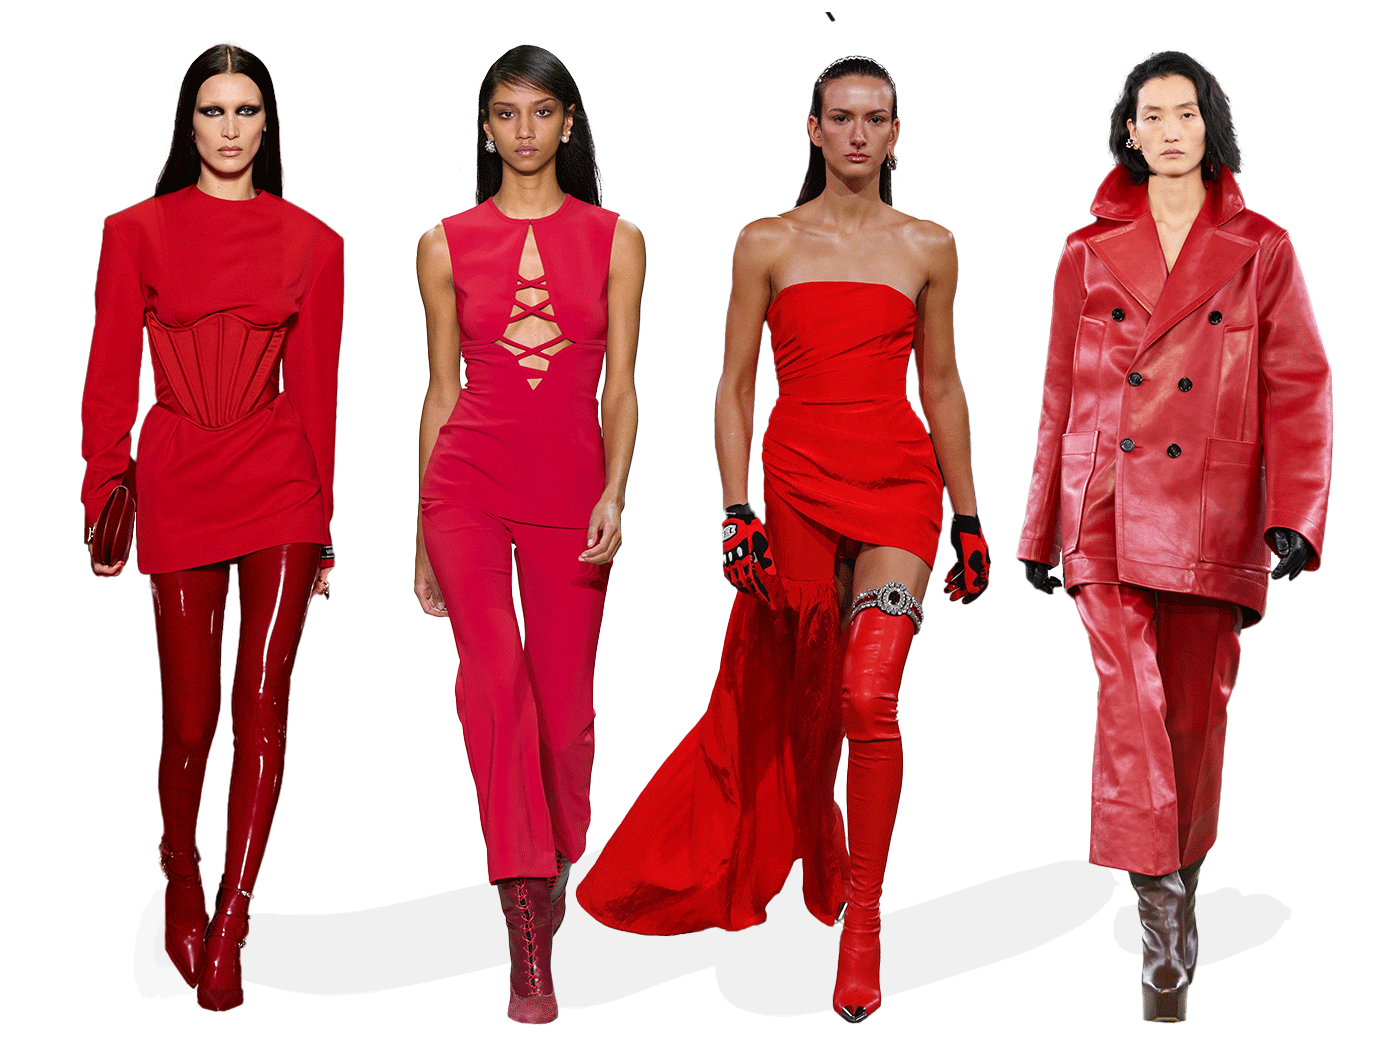 Κόκκινο: Ήρθε η εποχή να εντάξεις στο ντύσιμό σου κομμάτια με αυτό το φλογερό χρώμα